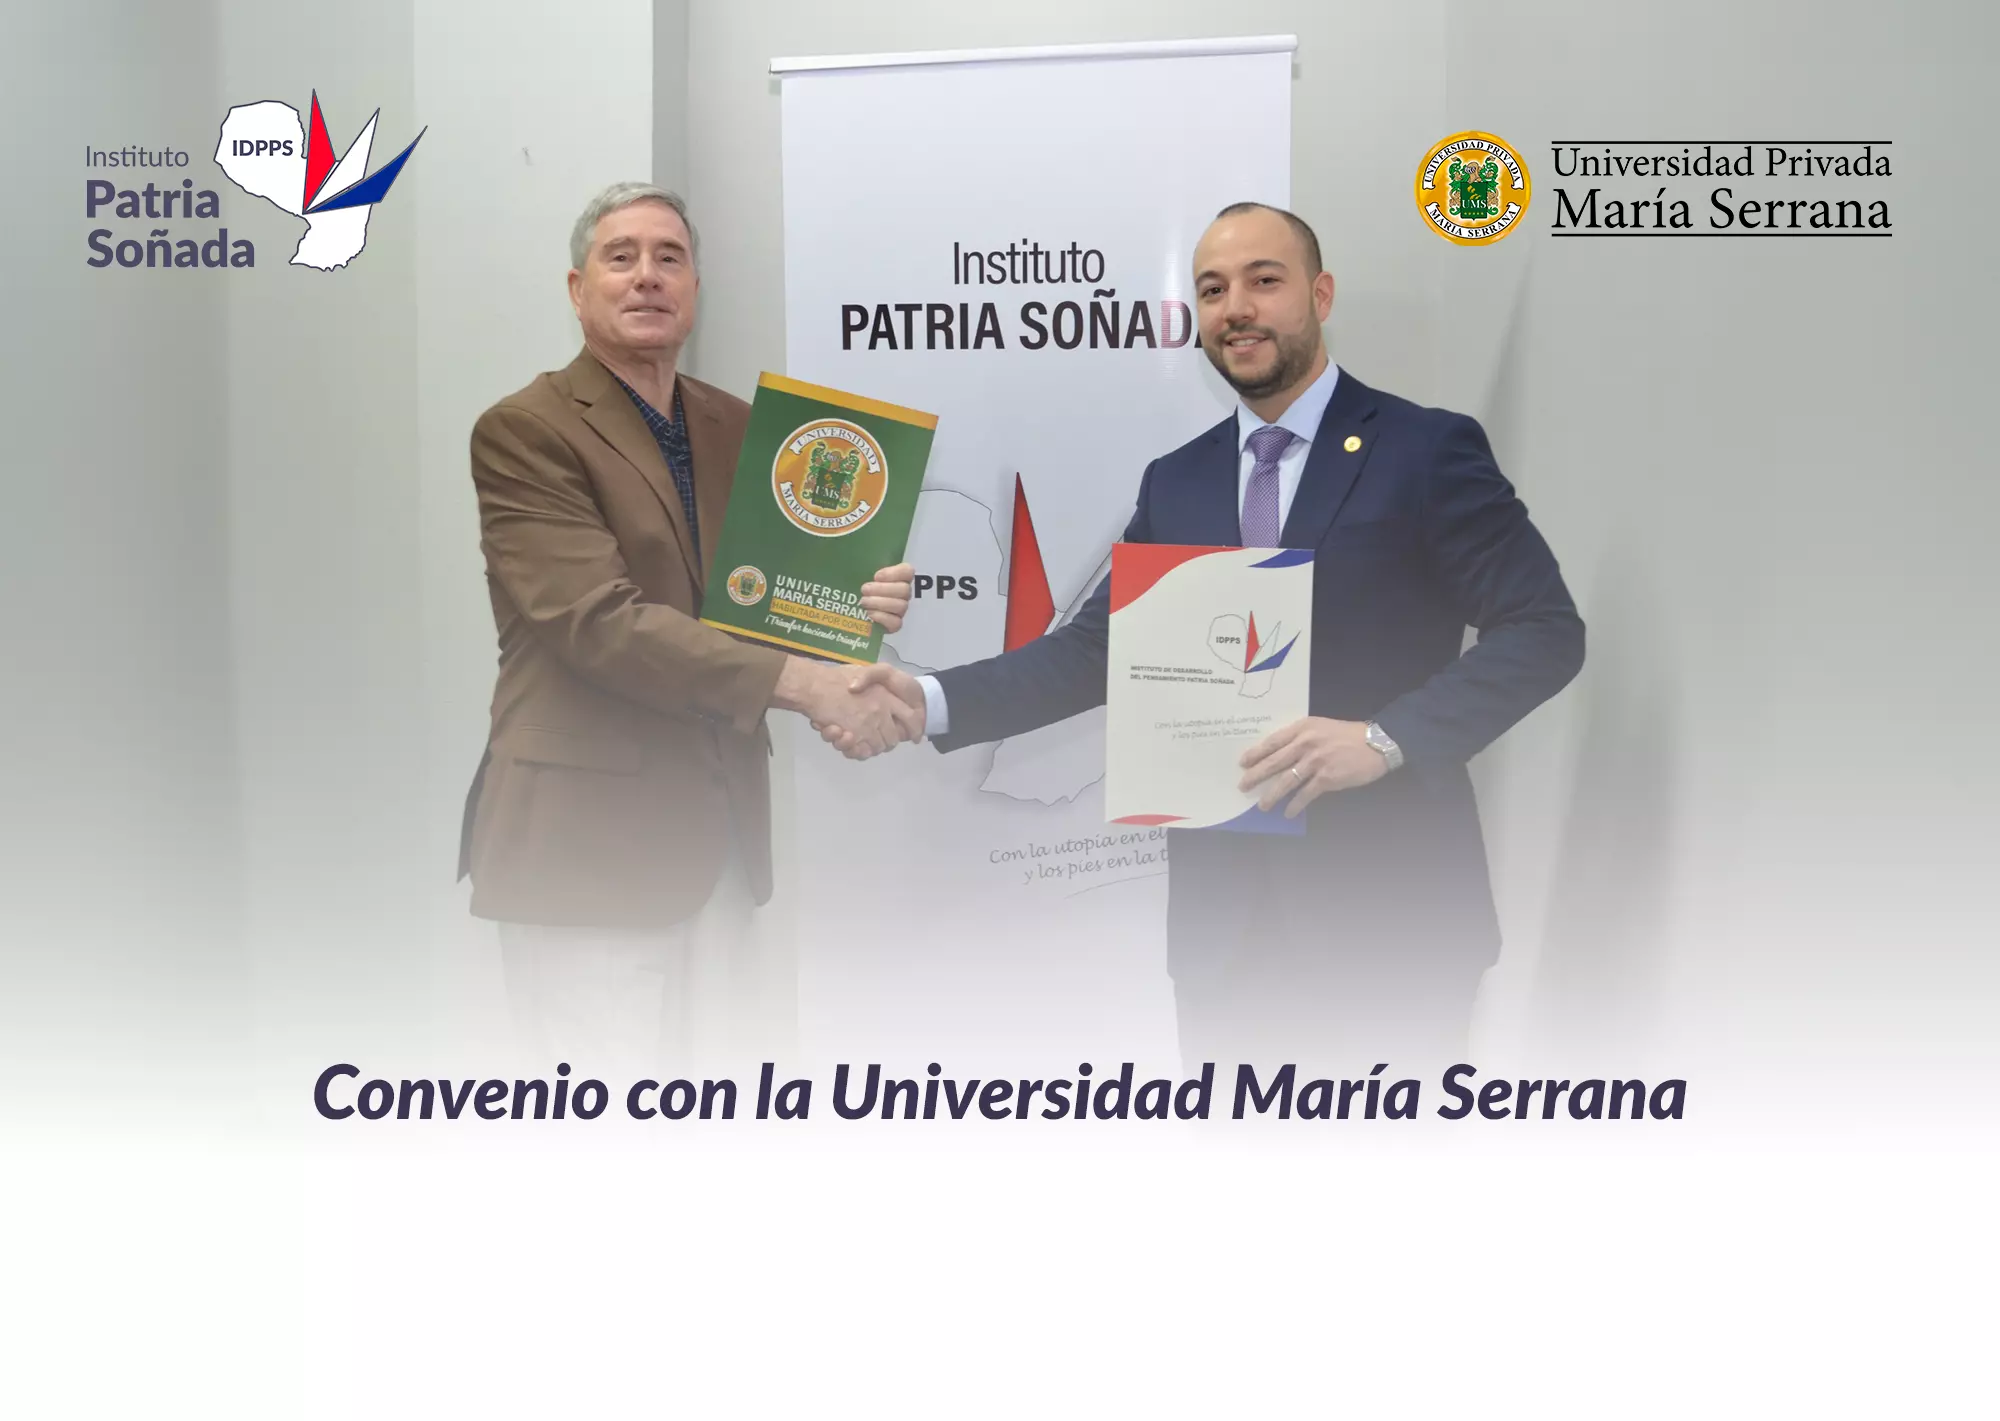 Convenio de Cooperación entre IDPPS y Universidad Privada María Serrana